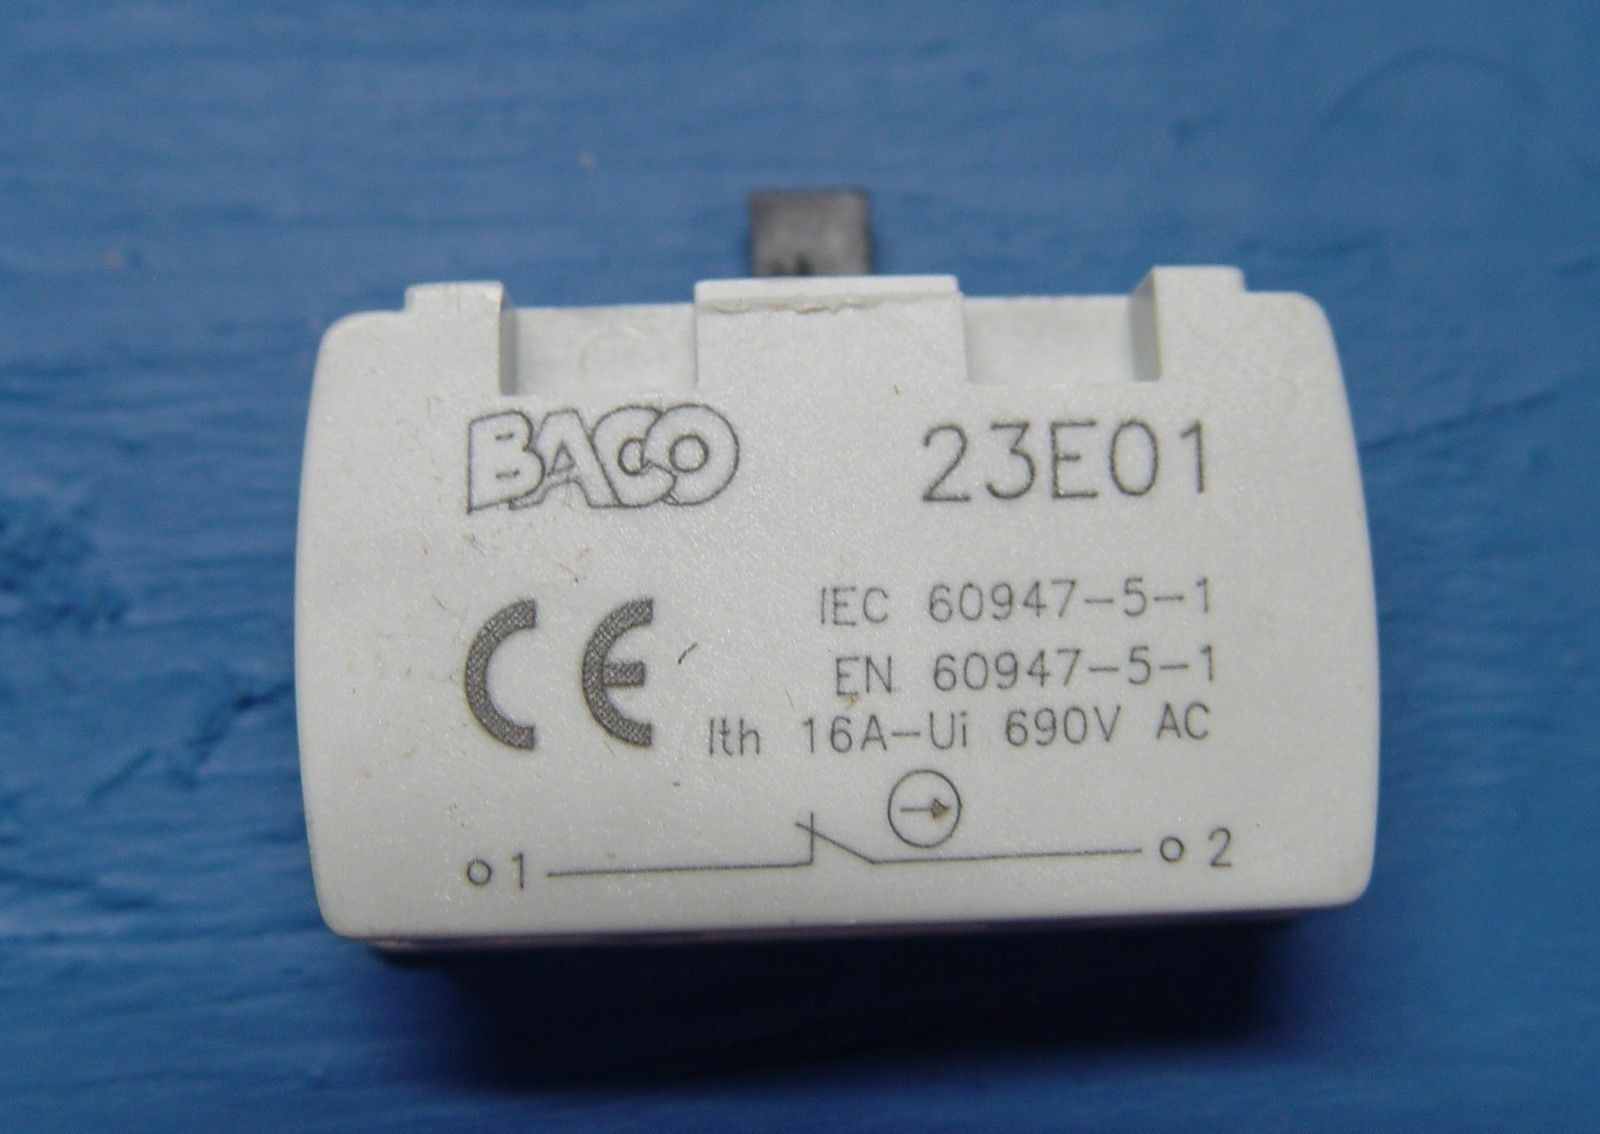 Bloque de contacto BACO 23-E01 Boton cerrado